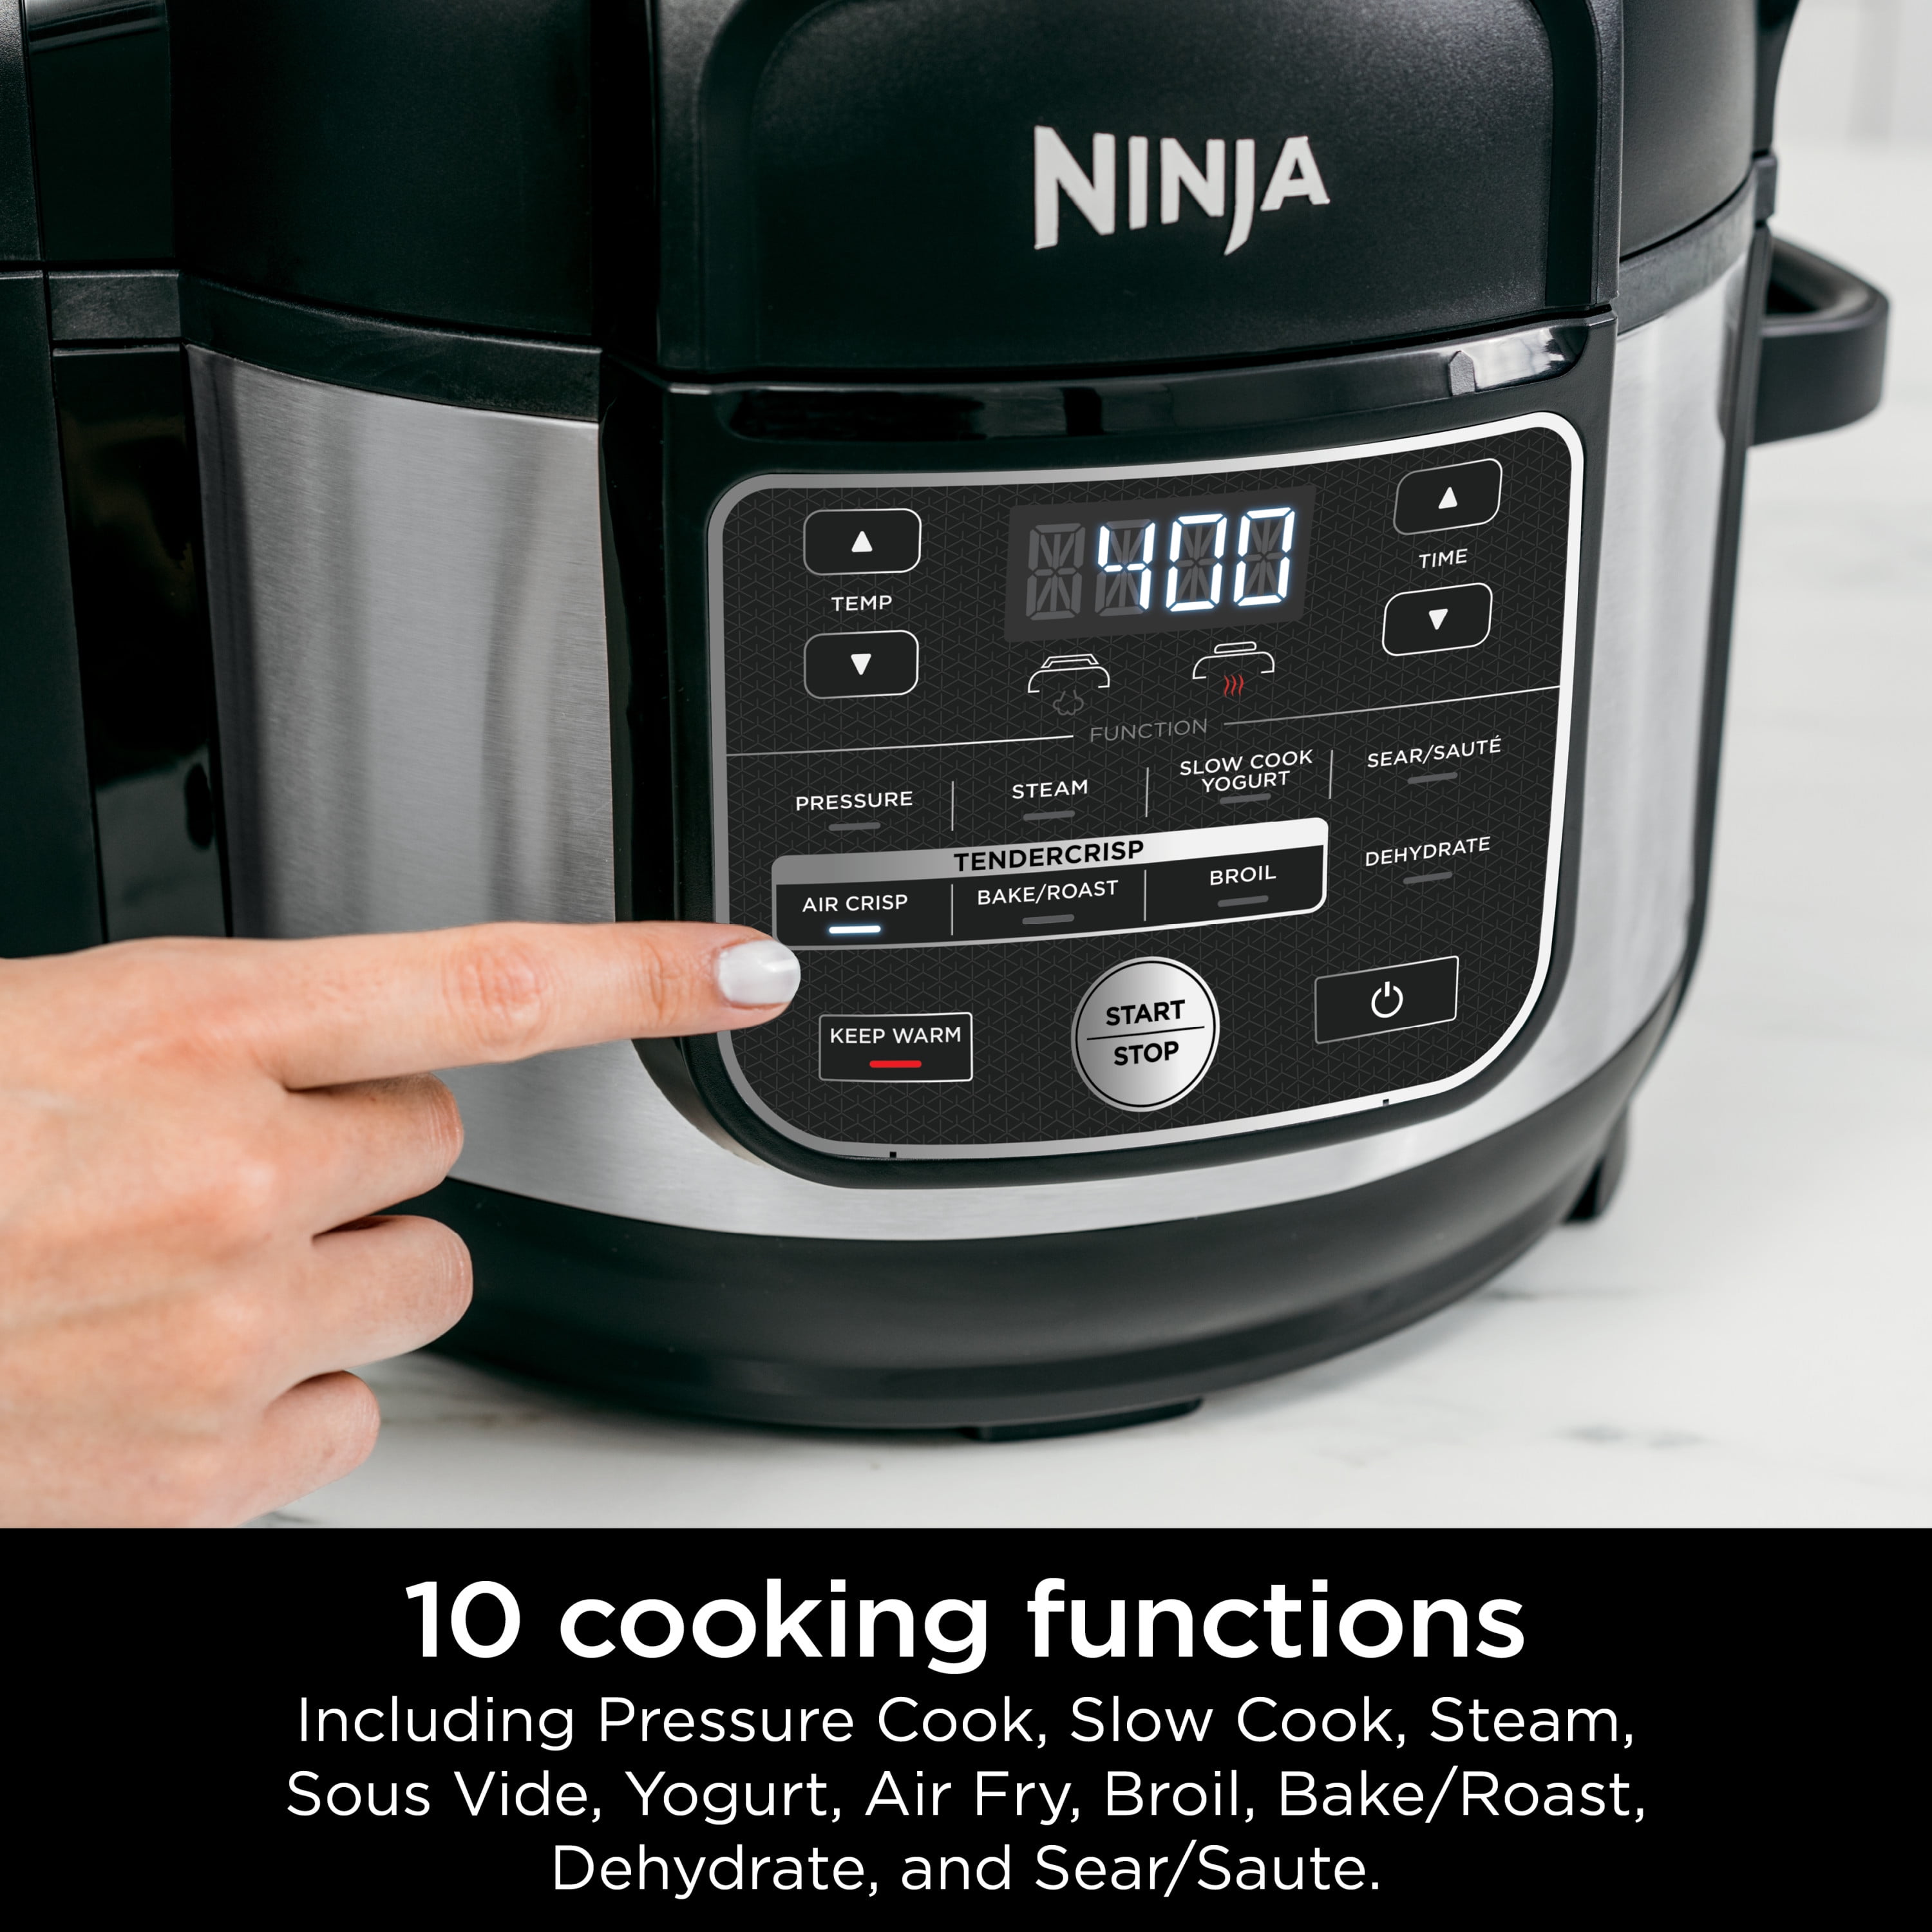 Ninja Foodi 10-in-1 Pressure Cooker Air Fryer, Multicooker, Stainless Steel 6.15 L (6.5 qt)